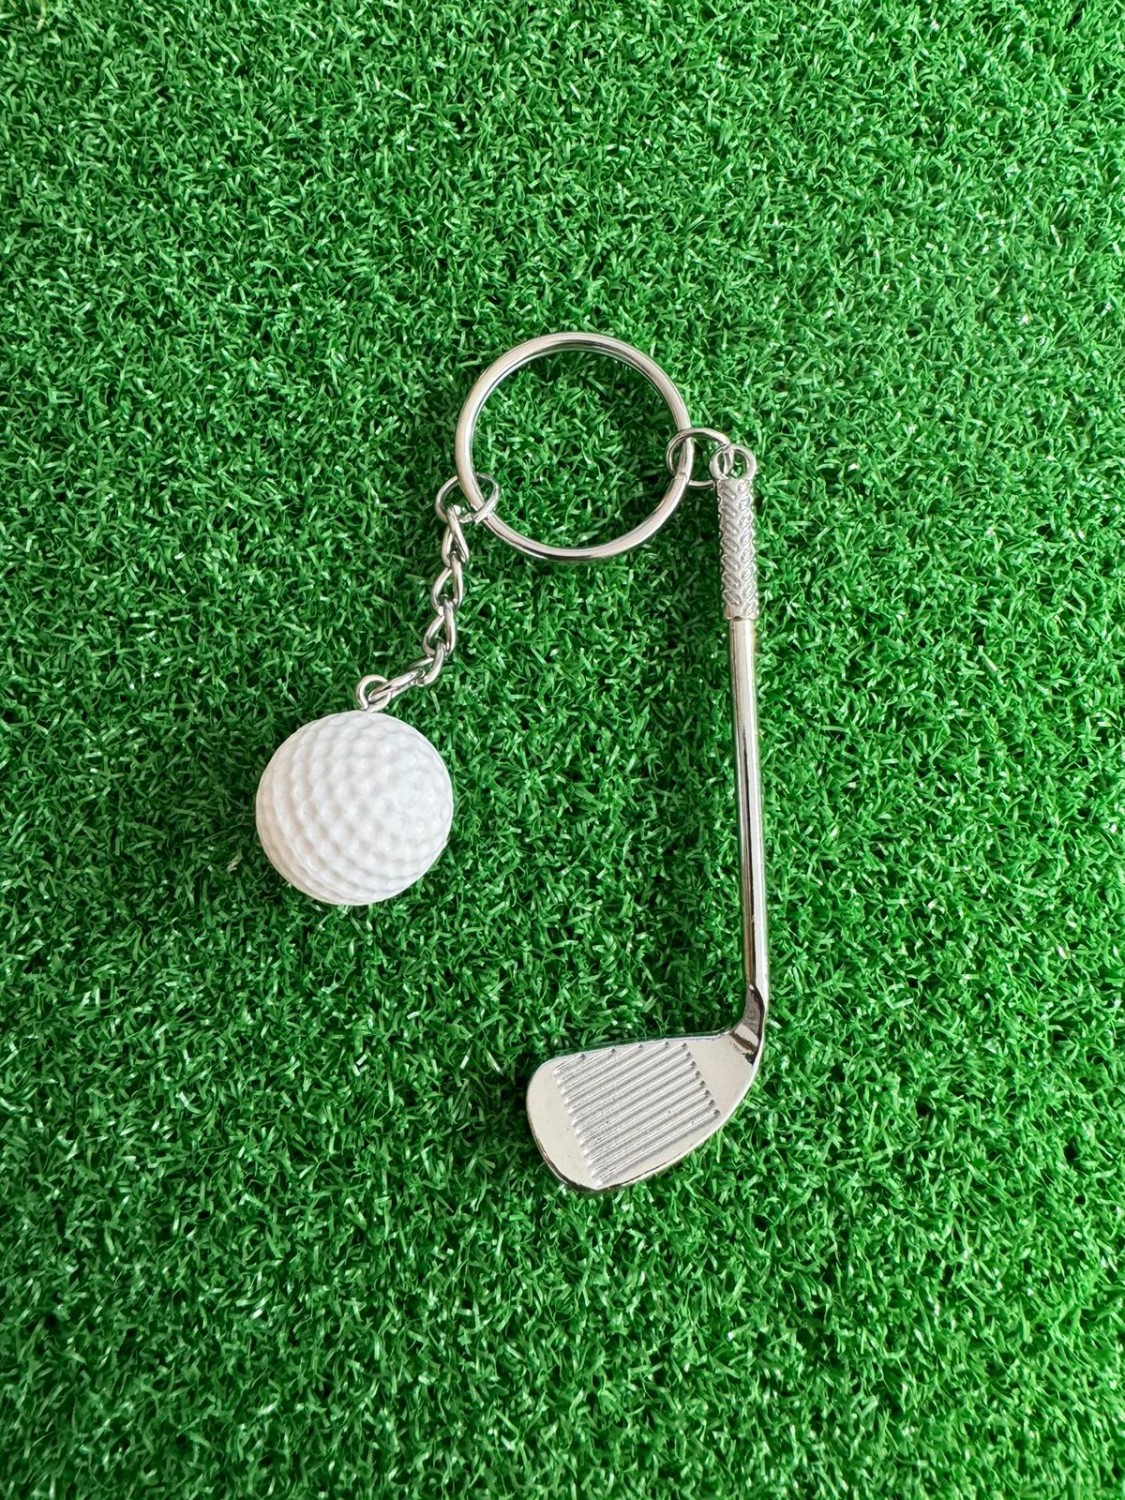 Porte clef Balle de Golf , cadeau de golf personnalisé